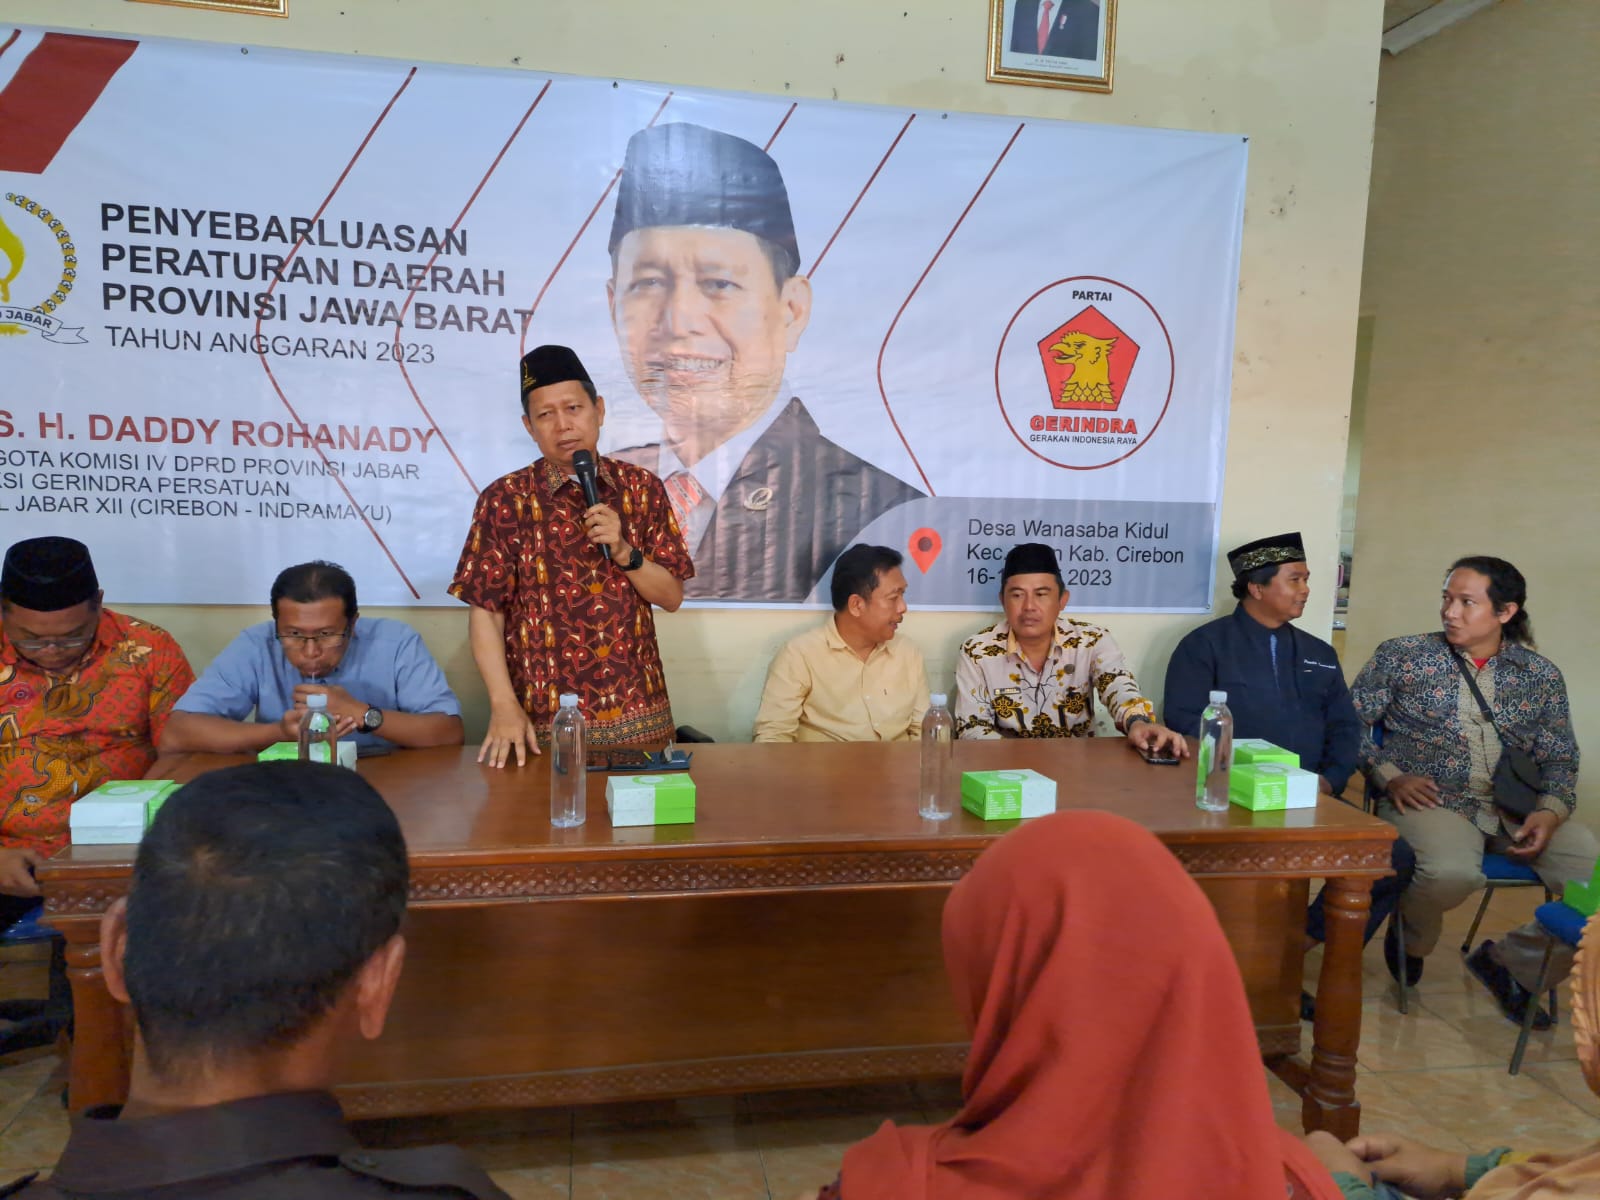 Permasalahan mengenai pengelolaan sampah di Jawa Barat terus disosialisasikan oleh anggota DPRD Jabar Komisi IV Daddy Rohanady.